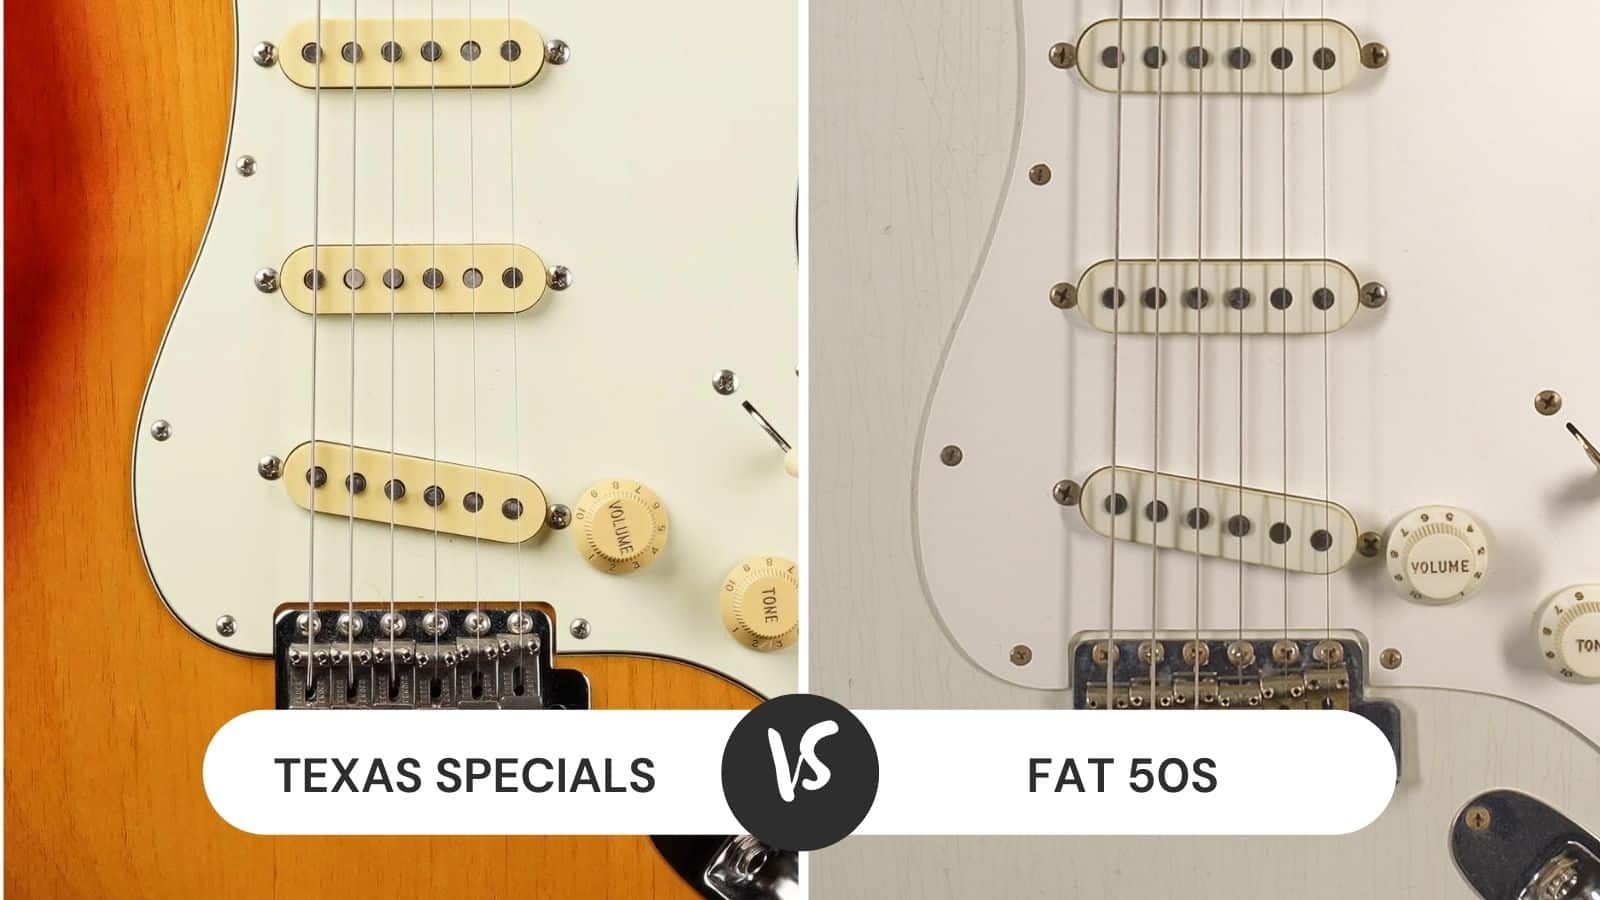 Texas Specials vs Fat 50s